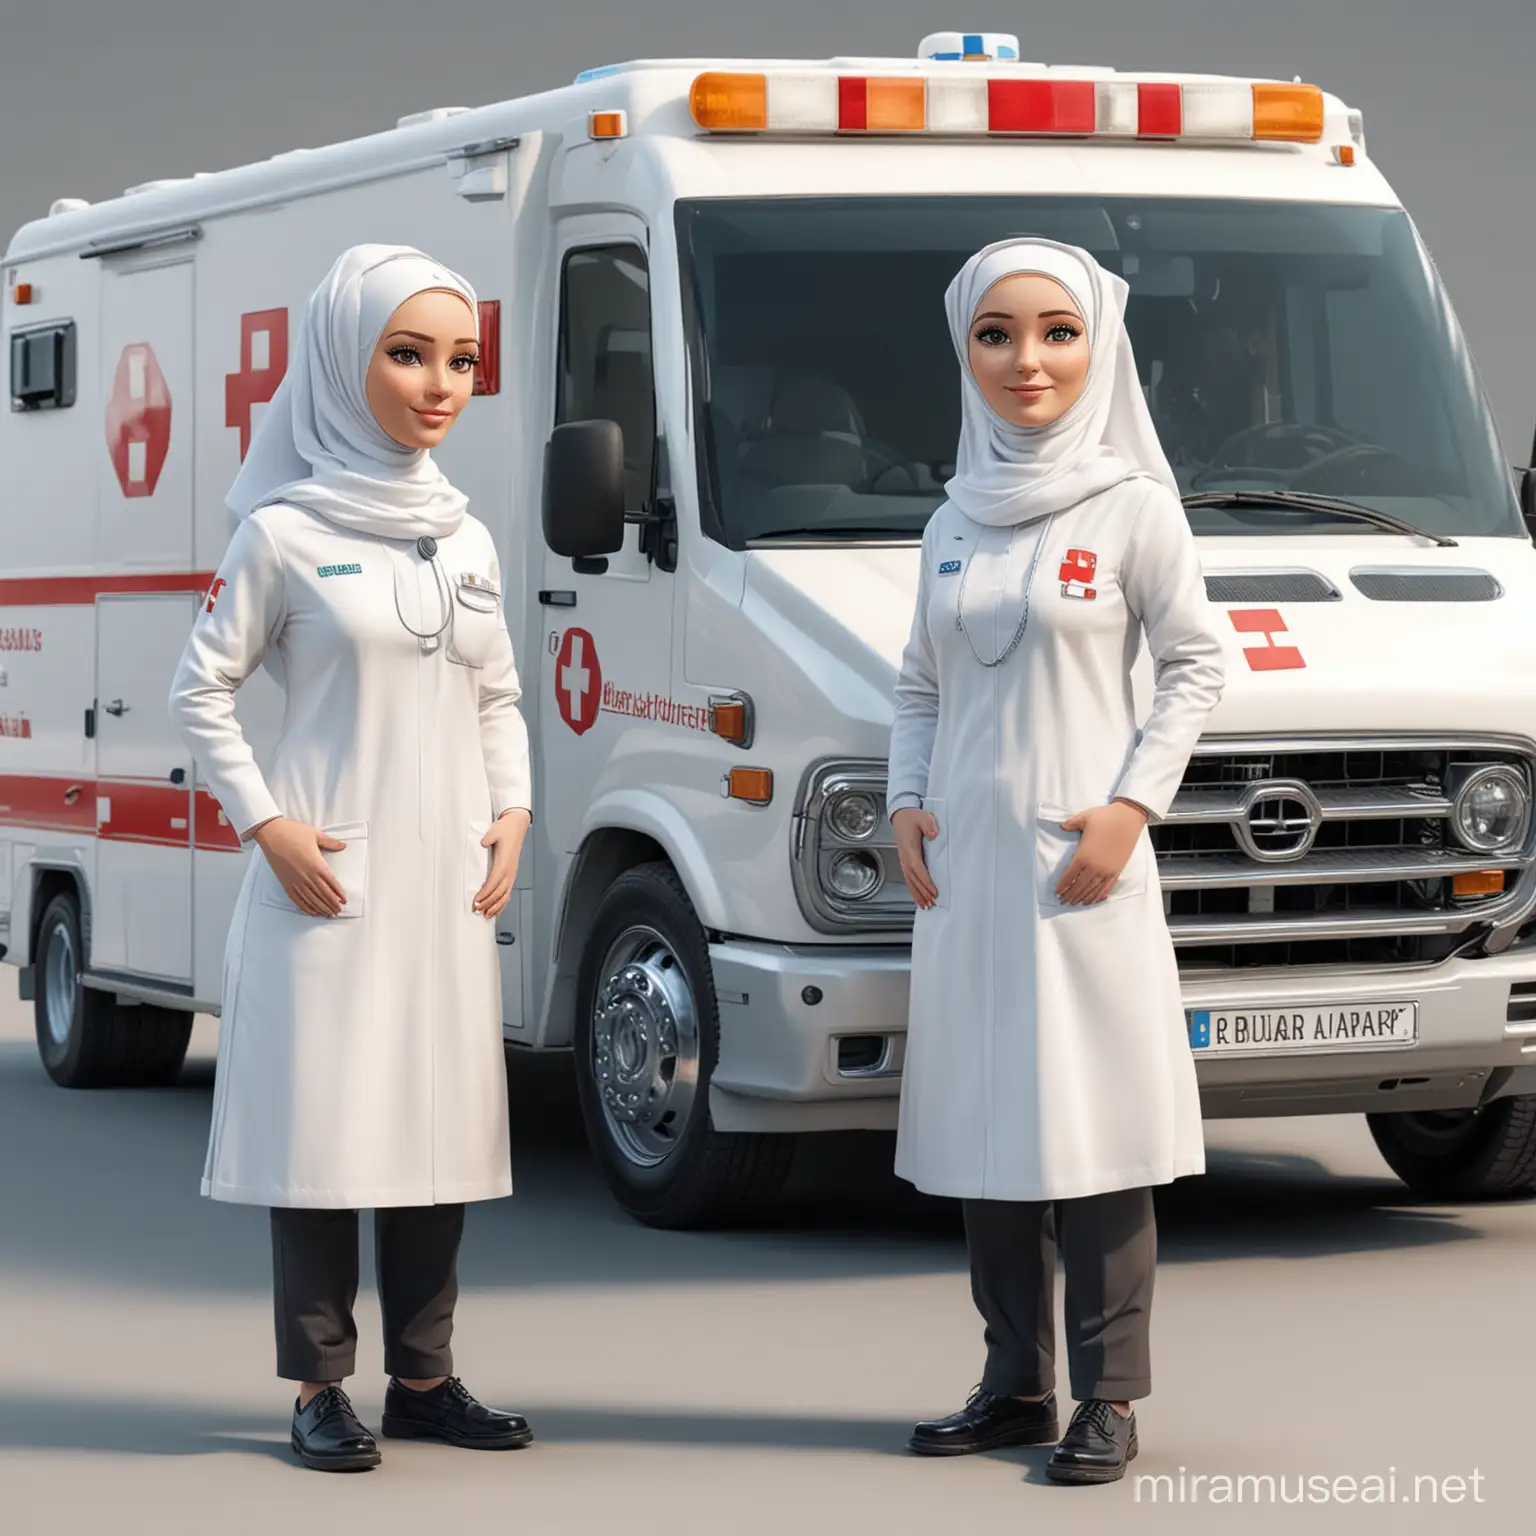 Foto karikatur 3d reakistic dua orang wanita kepala besar memakai hijab seragam bidan putih putih,berdiri di deket ambulance,latar belakang putih,HDR, 800mm lens,full body long shoot